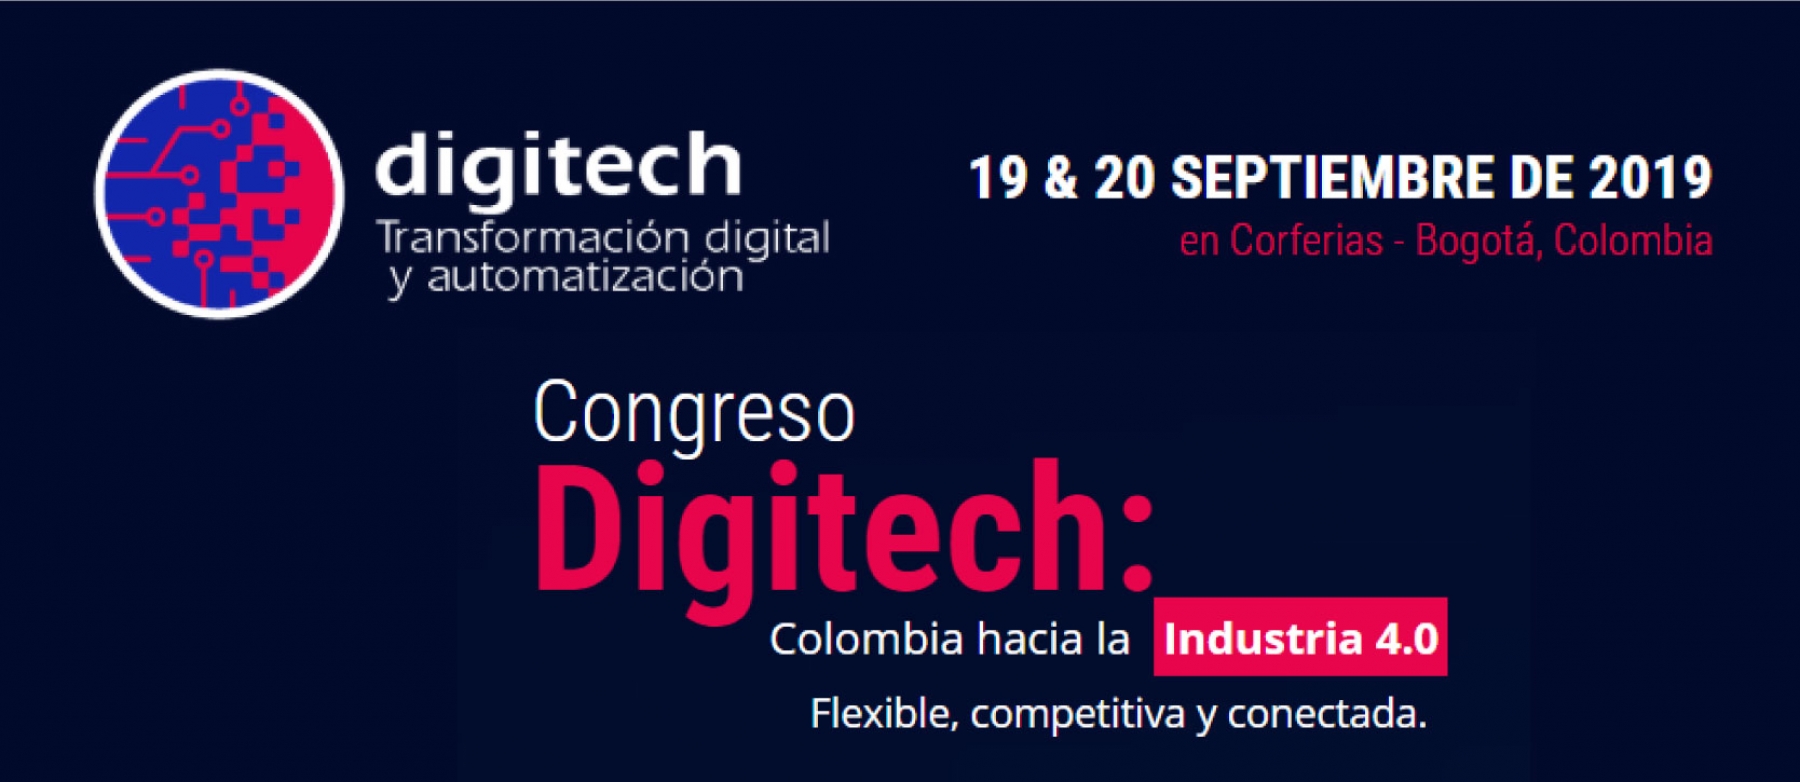 La indutria 4.0 se toma a Bogotá este 19 y 20 de septiembre con el Congreso Digitech liderado por la Universidad Nacional de Colombia con invitados nacionales e internacionales en Corferias